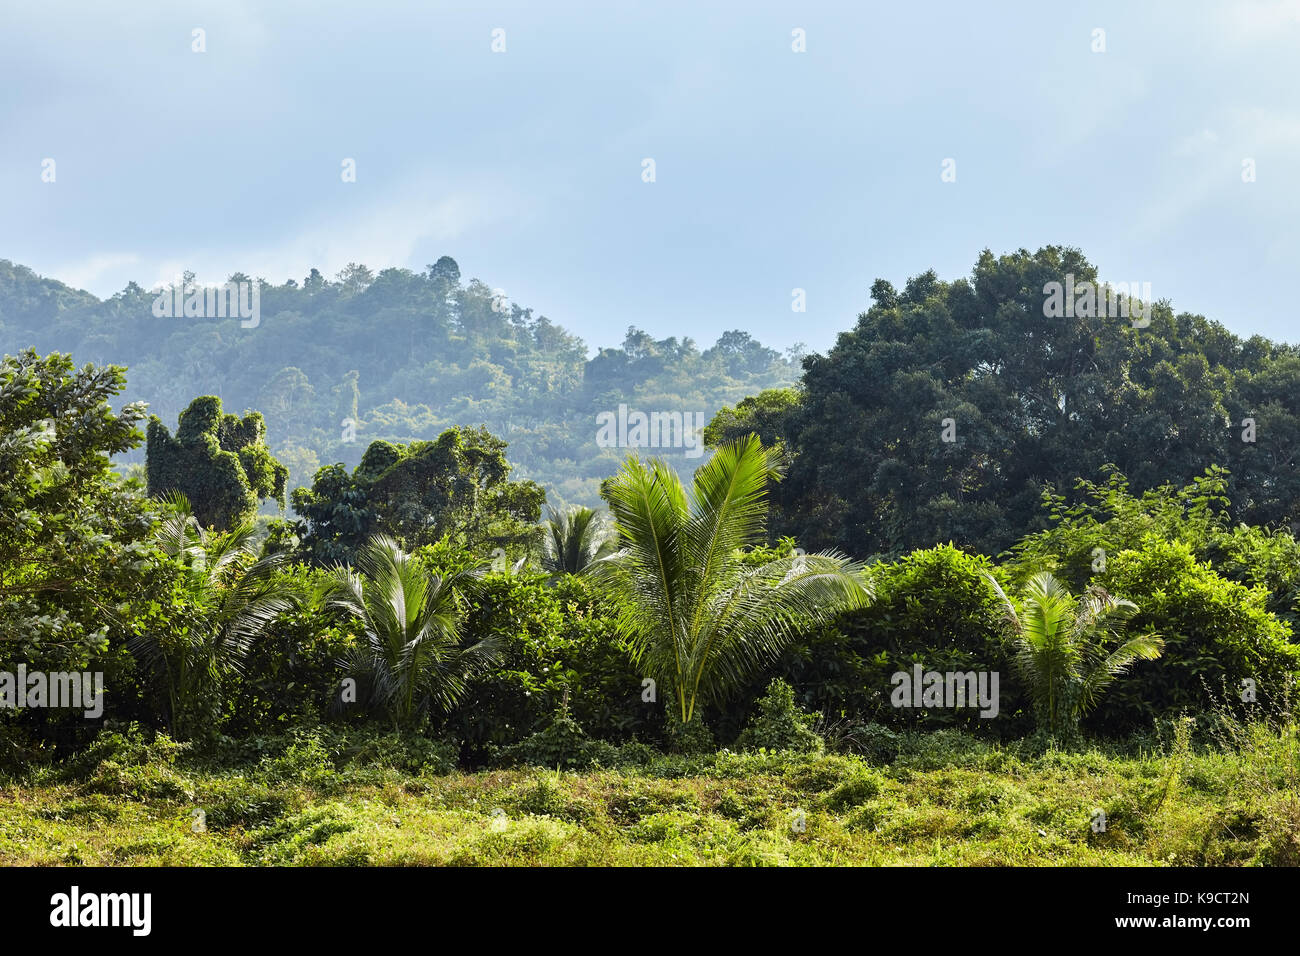 tropical jungle landscape under bright sun Stock Photo